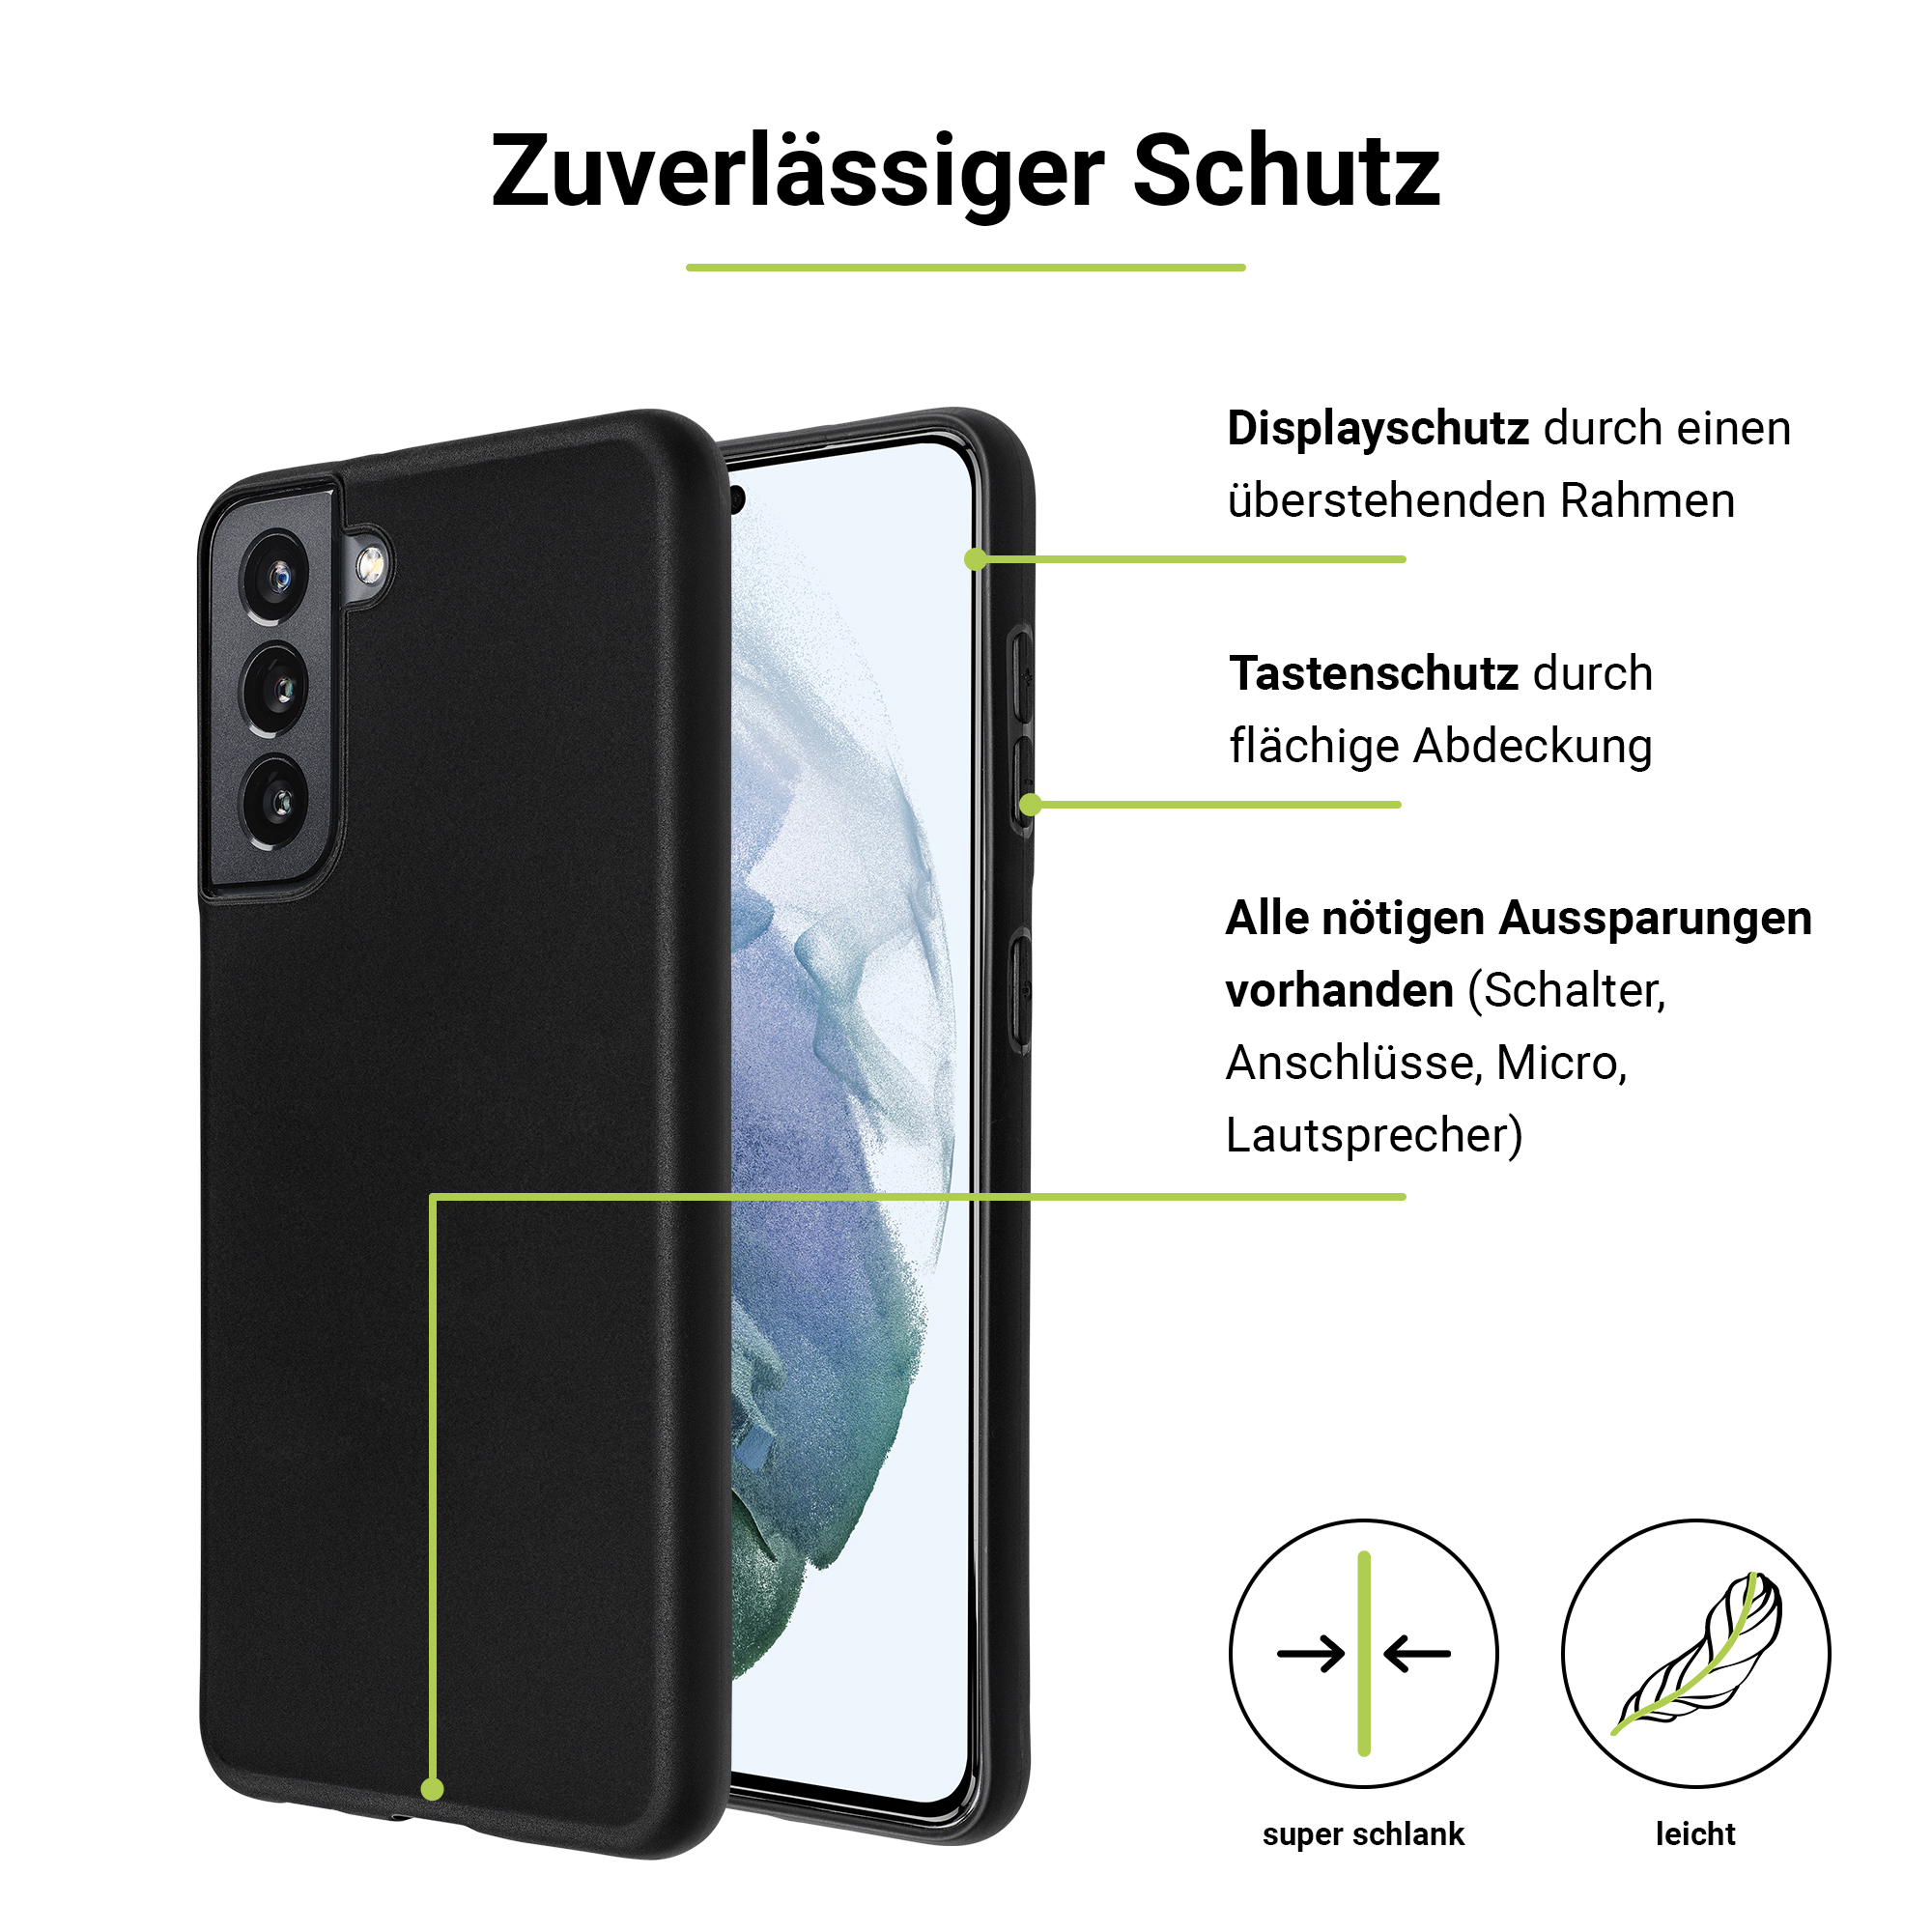 ARTWIZZ Basic Black Case für Galaxy Samsung Schwarz Galaxy A34 (5G), A34 (5G), Backcover, Samsung